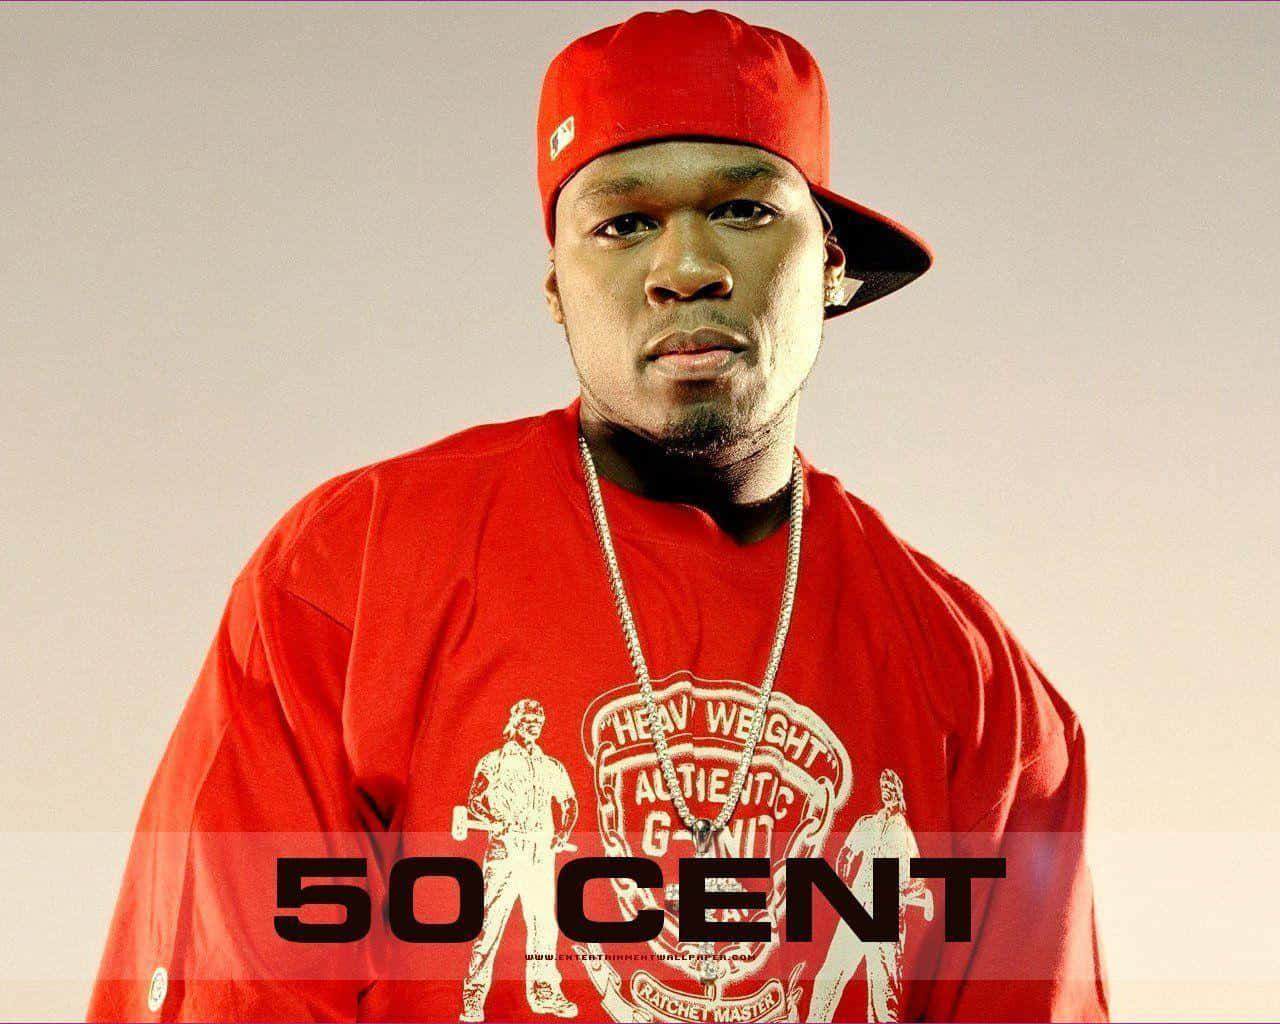 Award-winning Rapper 50 Cent